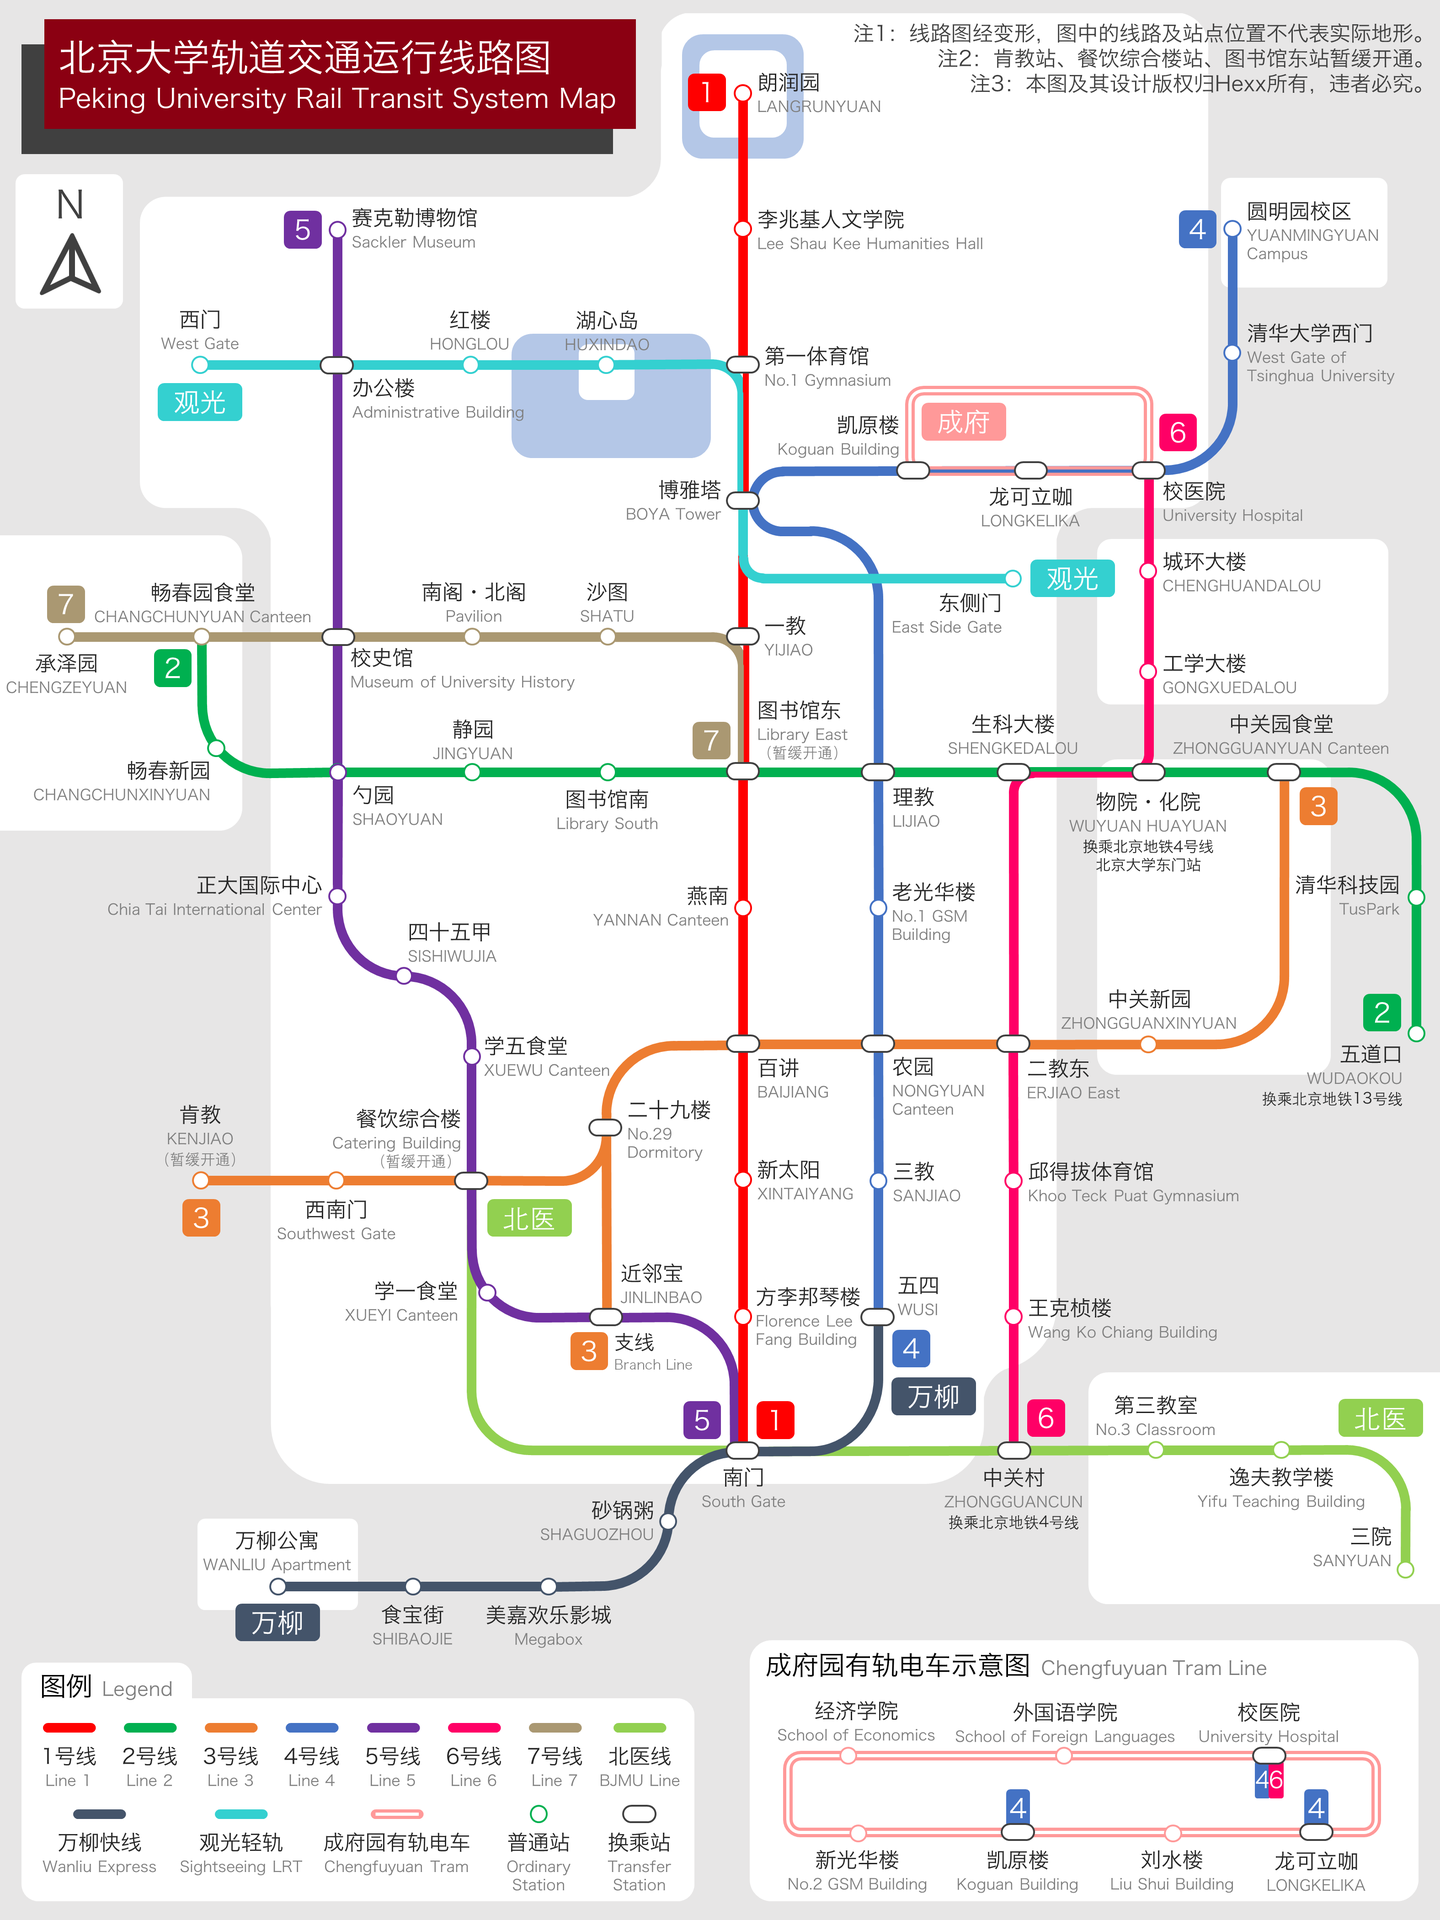 用powerpoint 制作北京大学轨道交通线路图 年1月 知乎